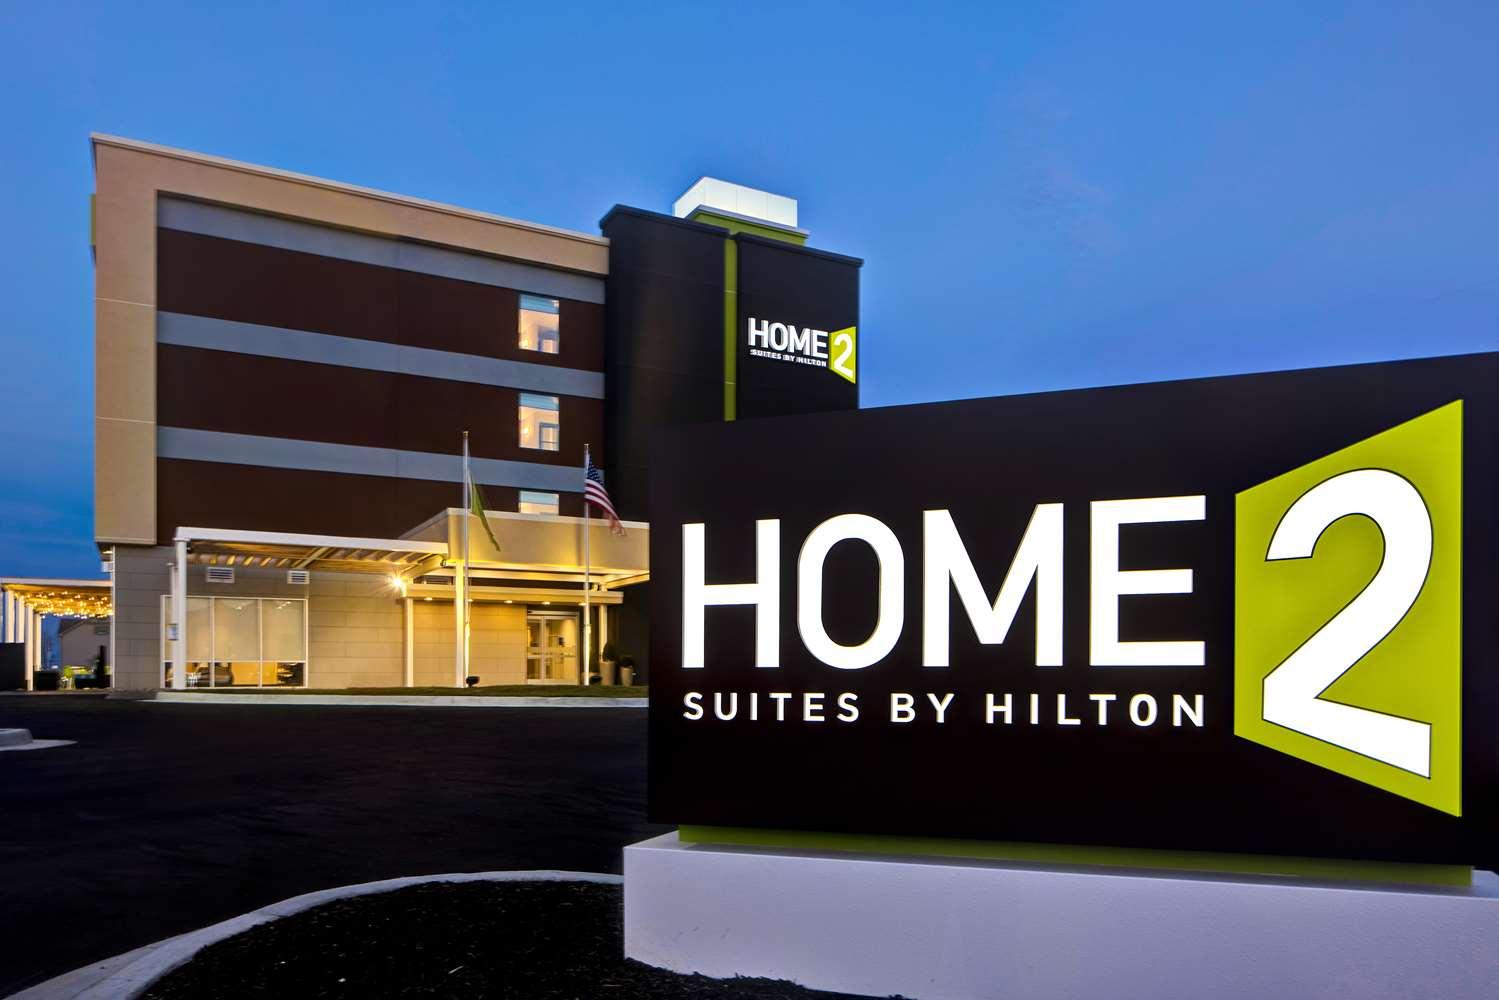 Home2 Suites by Hilton Lexington Hamburg in Lexington, KY